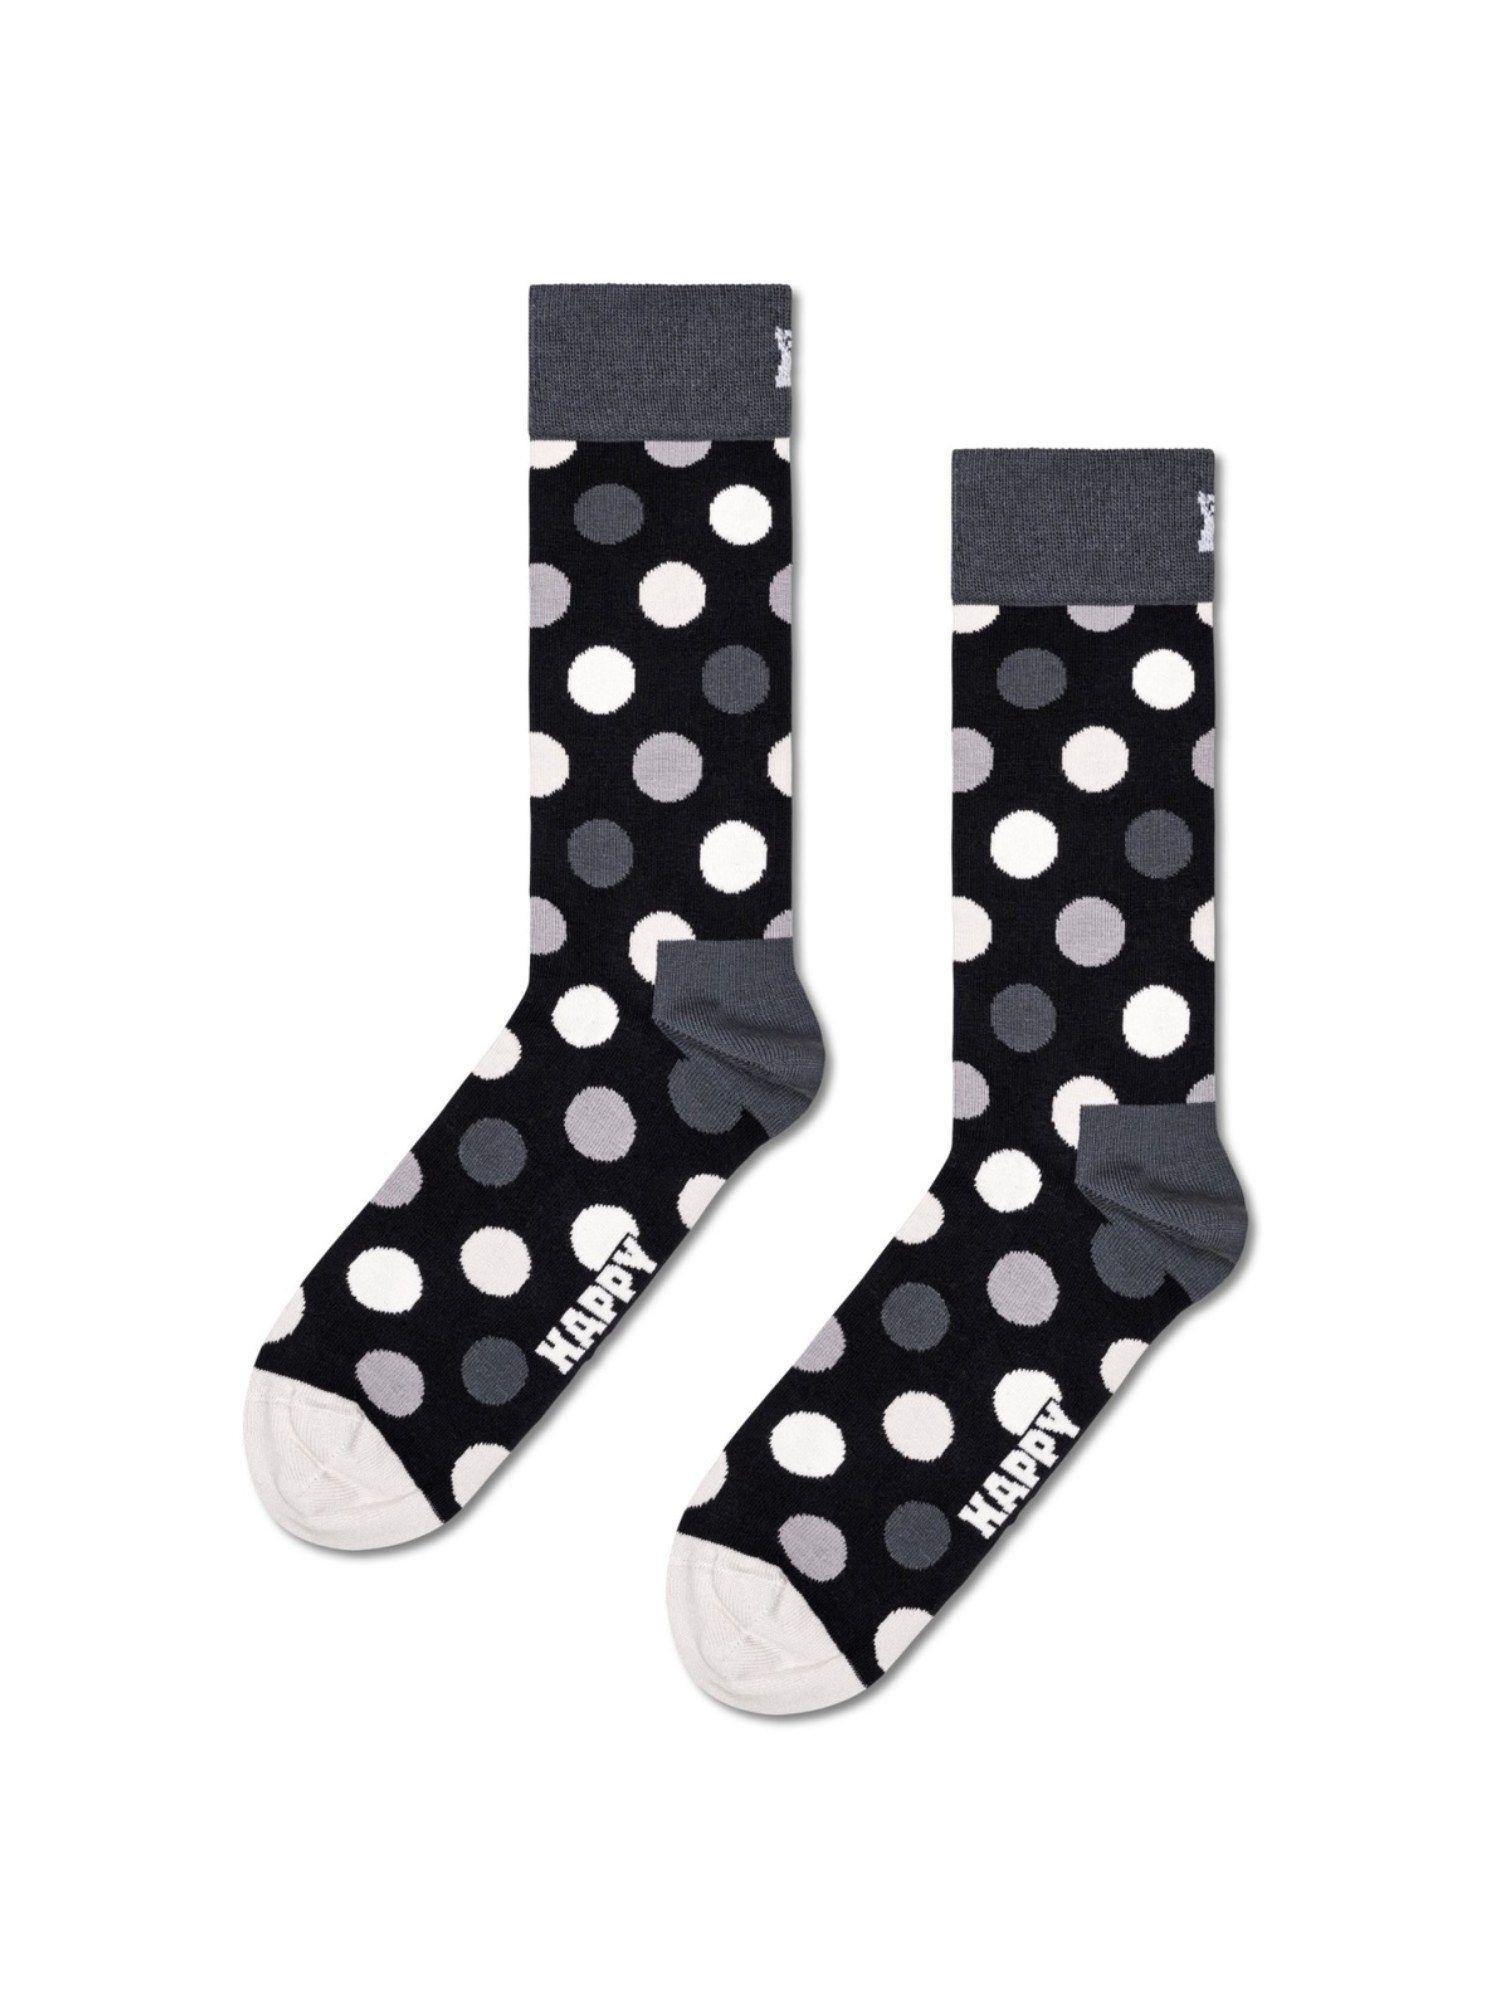 classic black & white unisex socks (pack of 4)